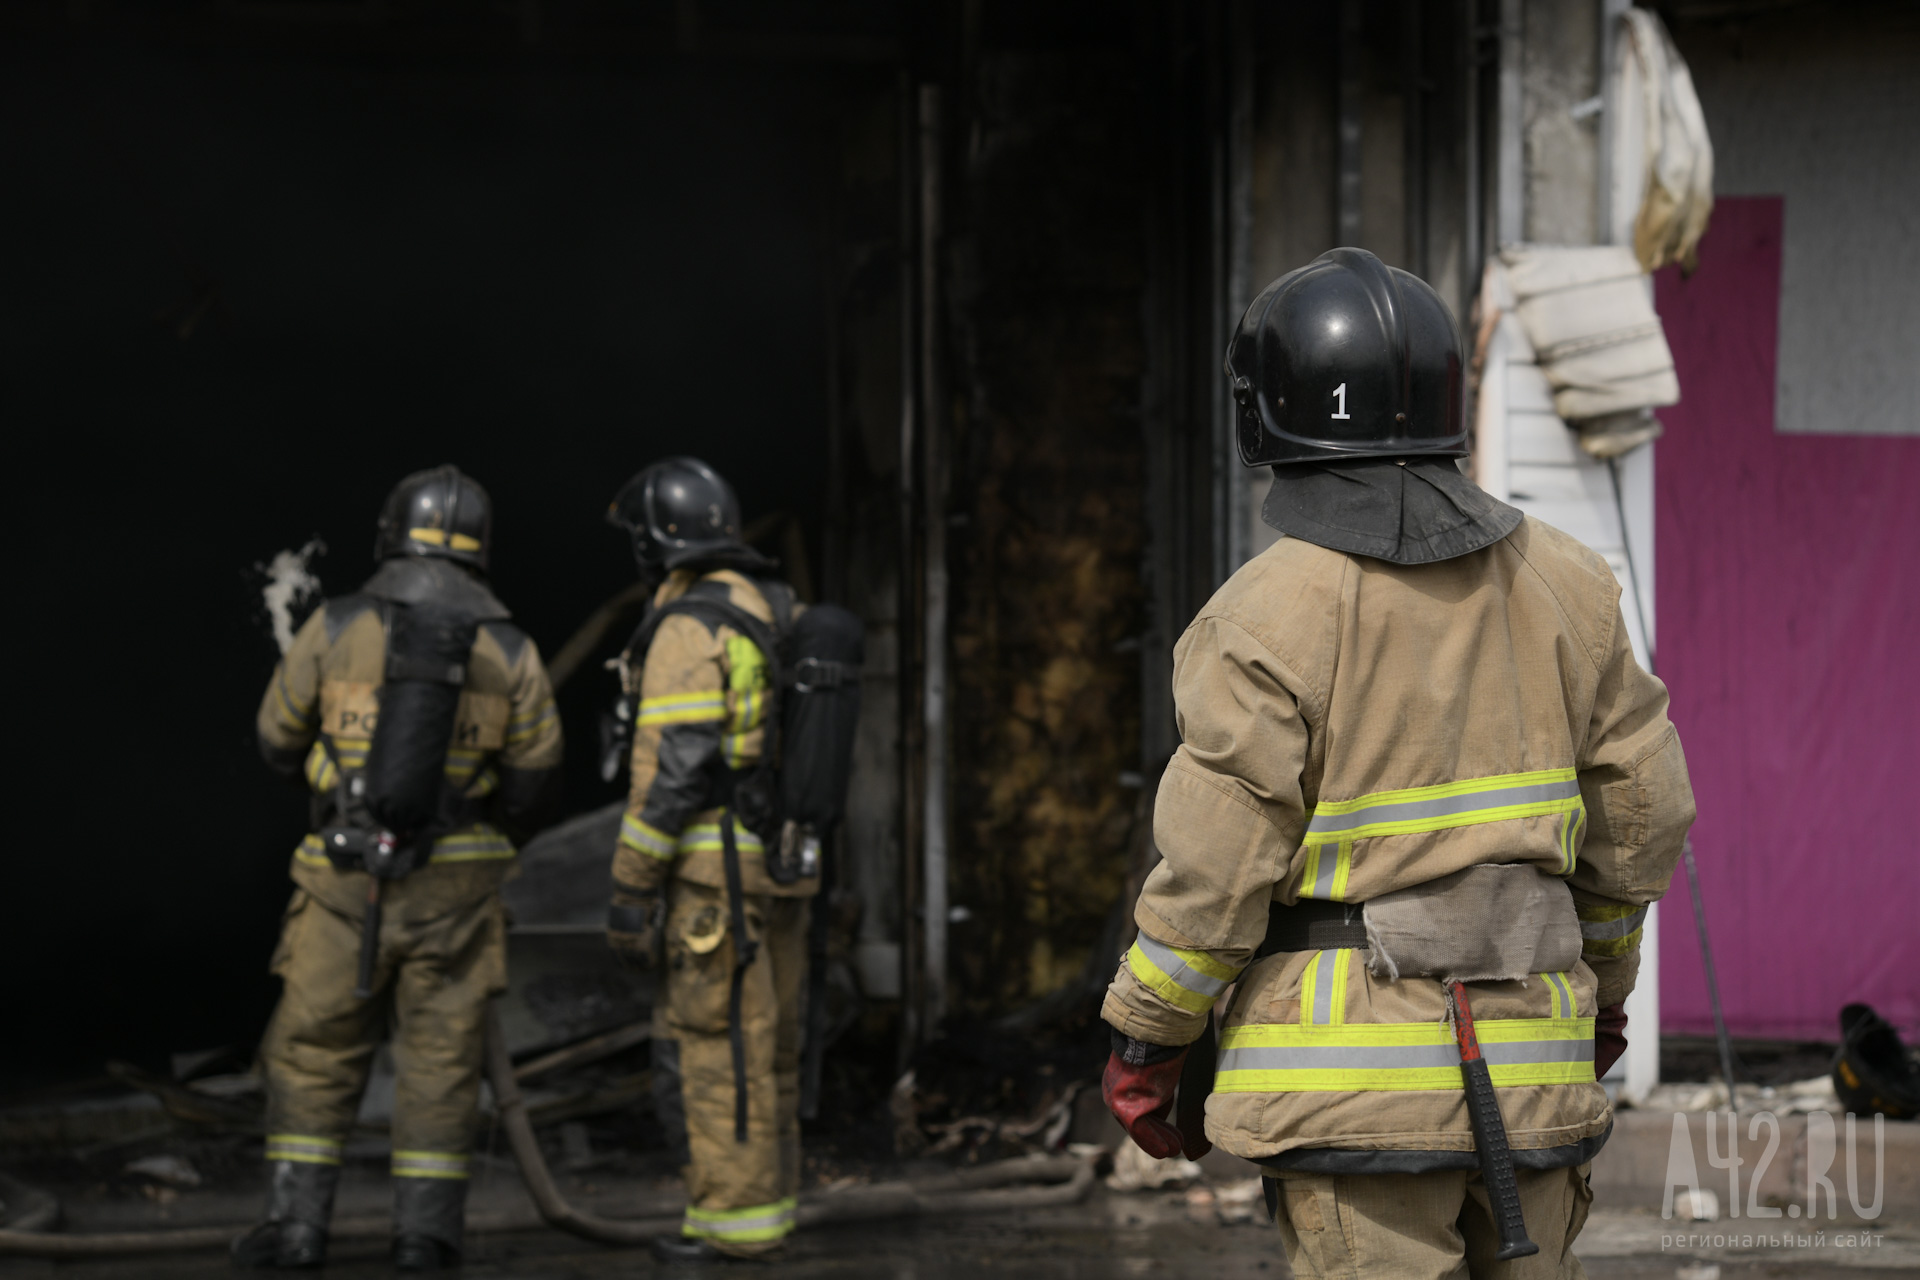 В Кузбассе четверо пожарных потушили загоревшийся транспорт